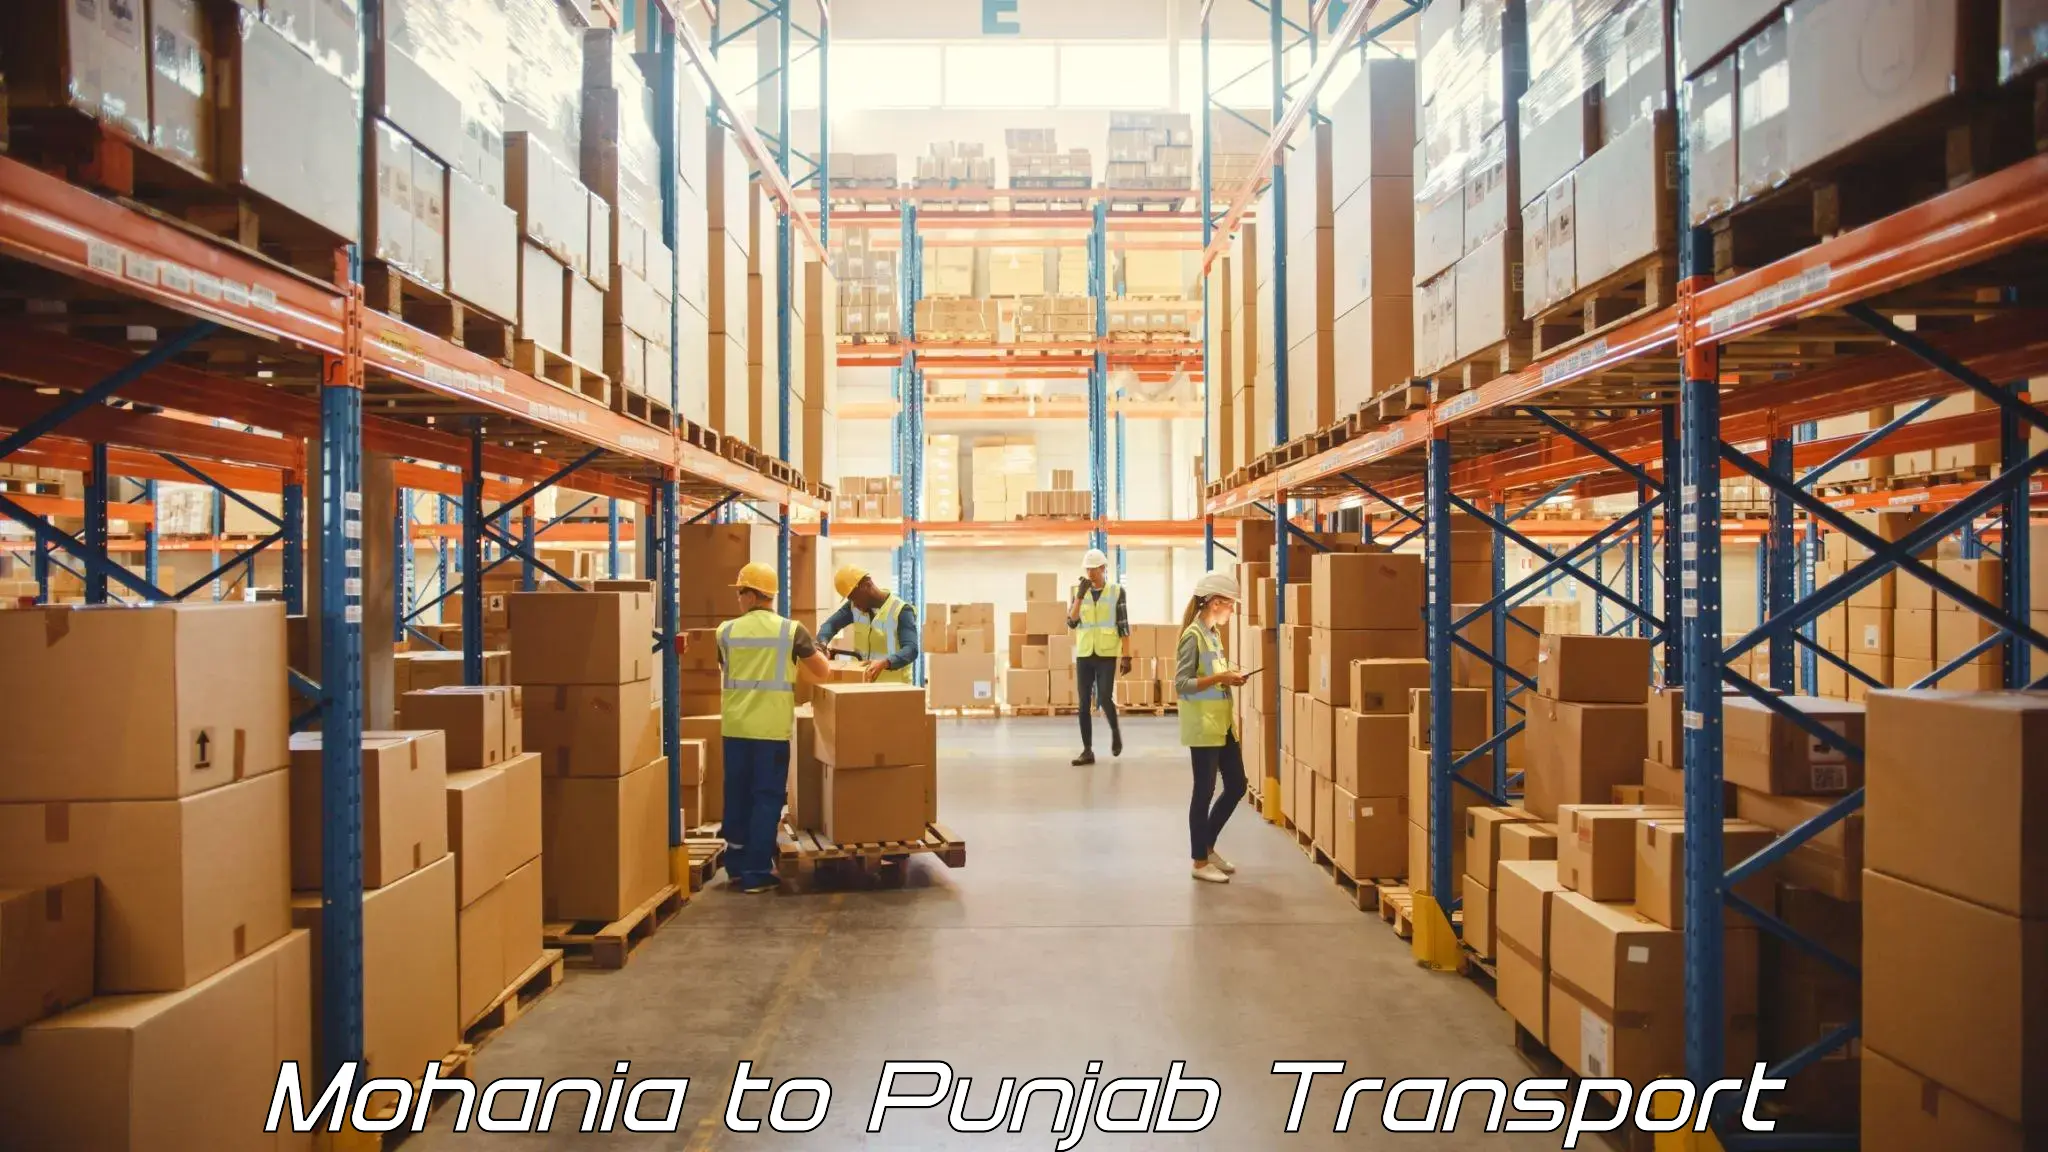 Lorry transport service Mohania to Faridkot